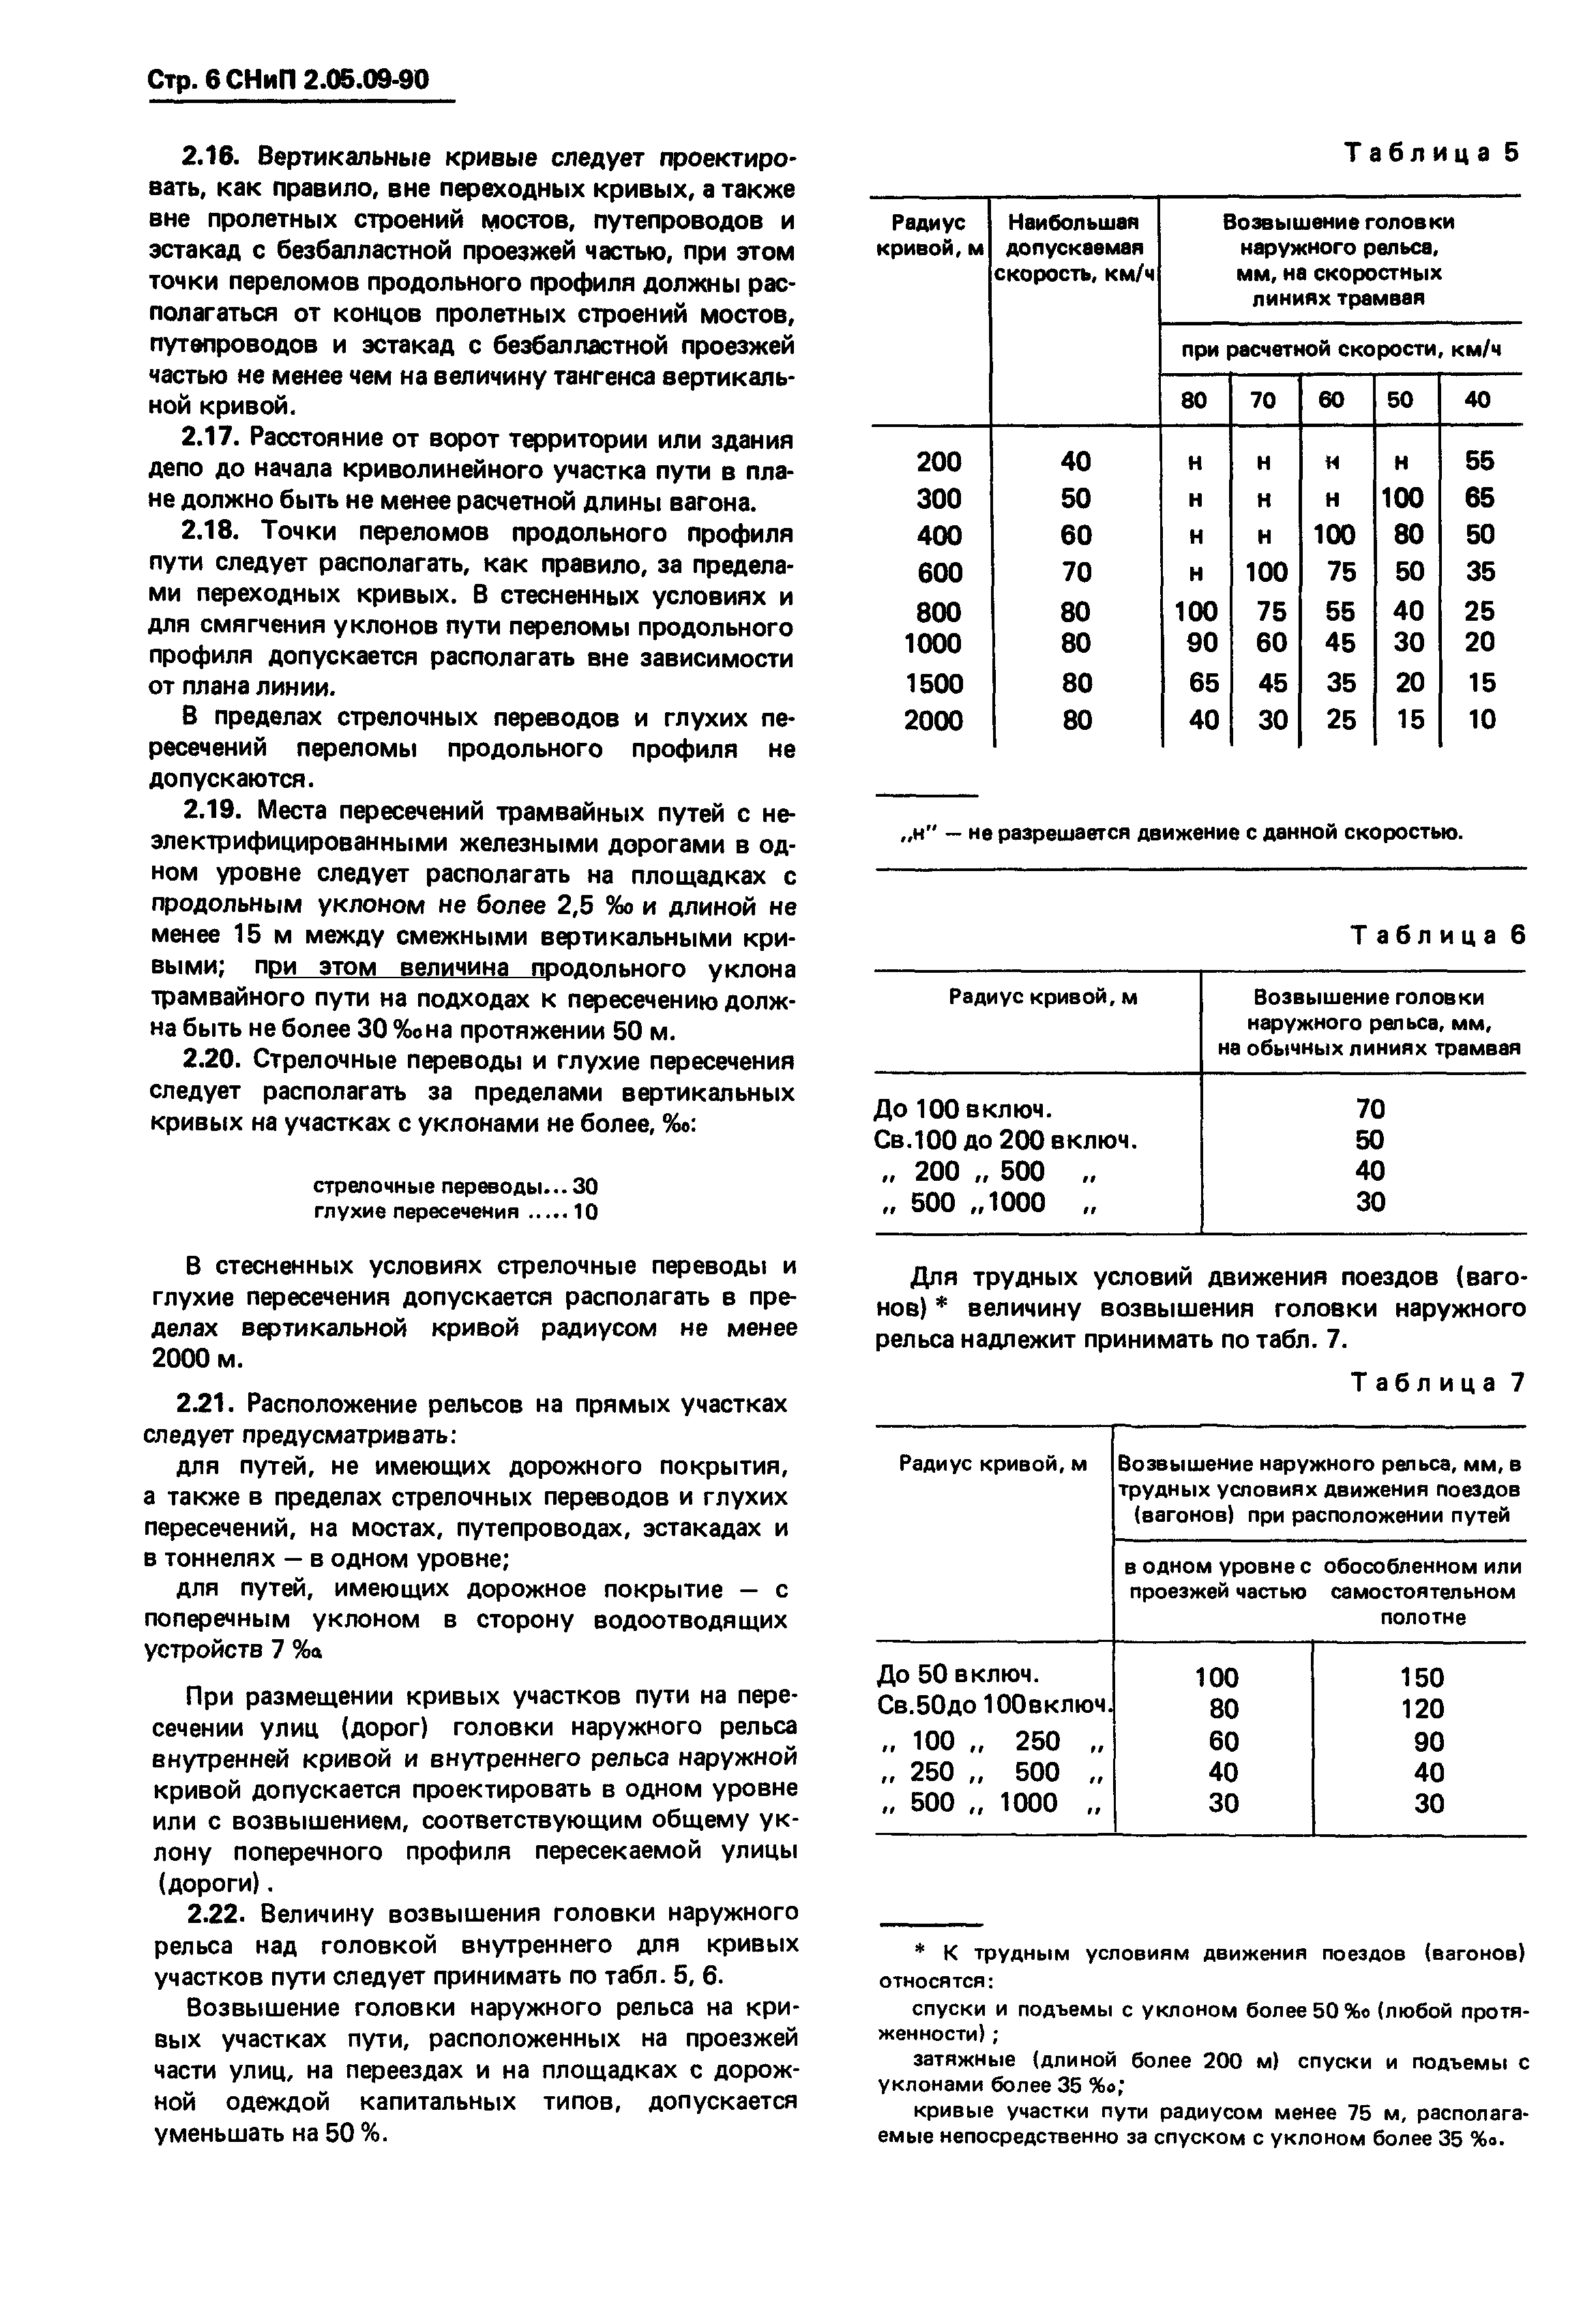 СНиП 2.05.09-90